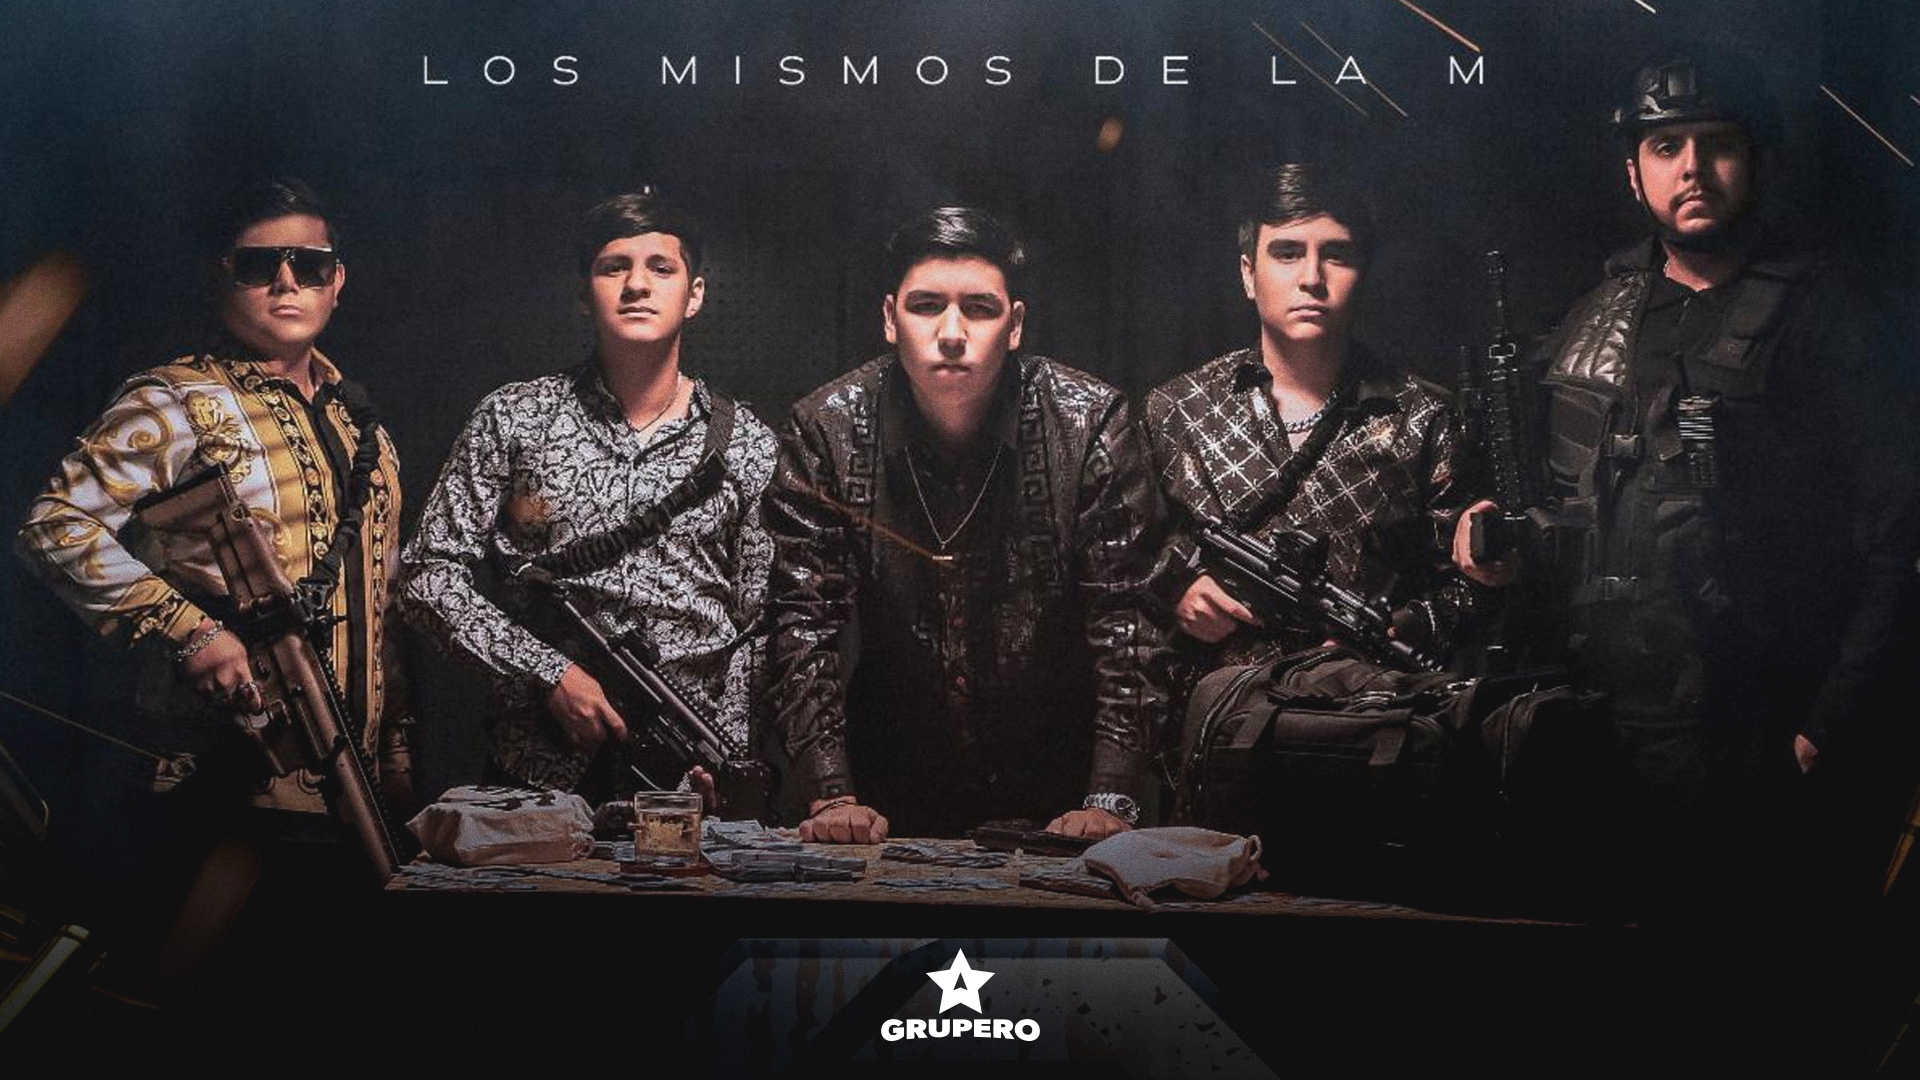 Los Mismos De La M debutan con el sencillo “6 Letras”